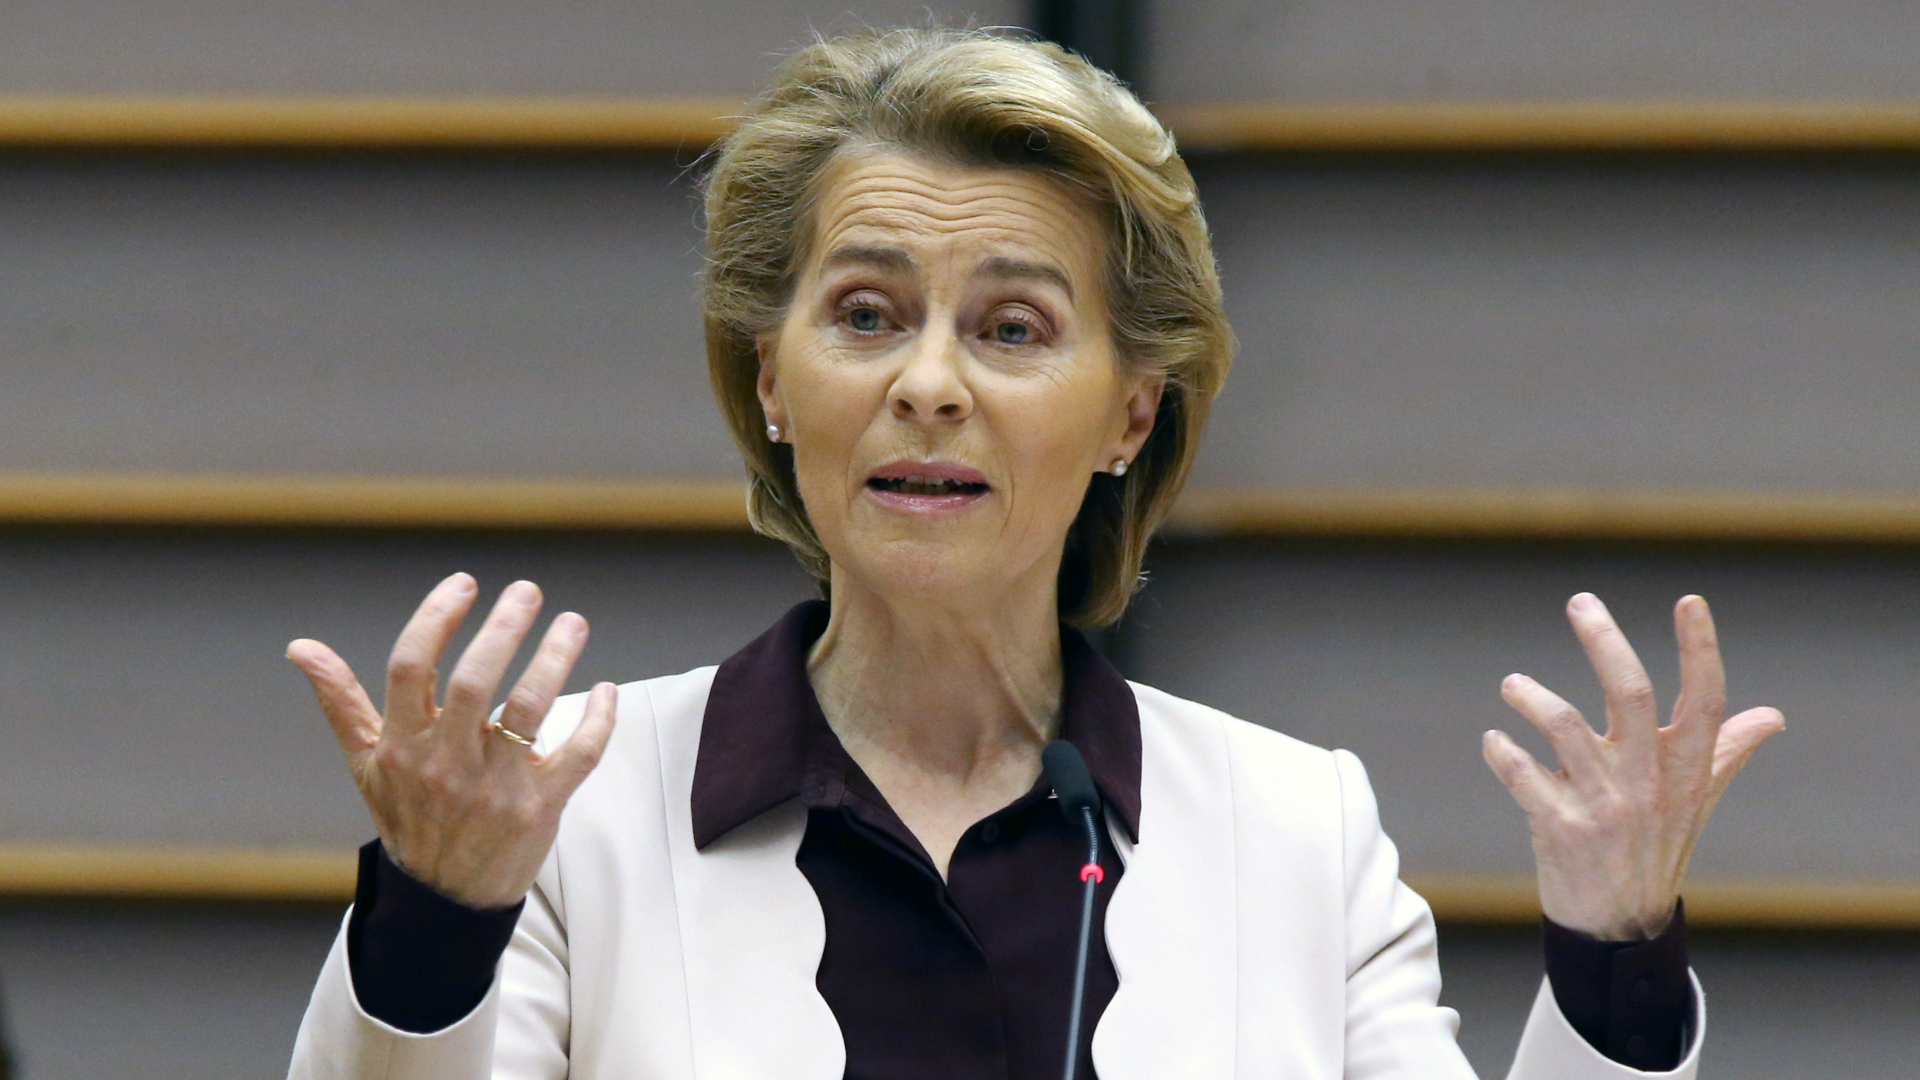 Kommissionspräsidentin Ursula von der Leyen bei einer Rede vor dem Europaparlament in Brüssel | REUTERS